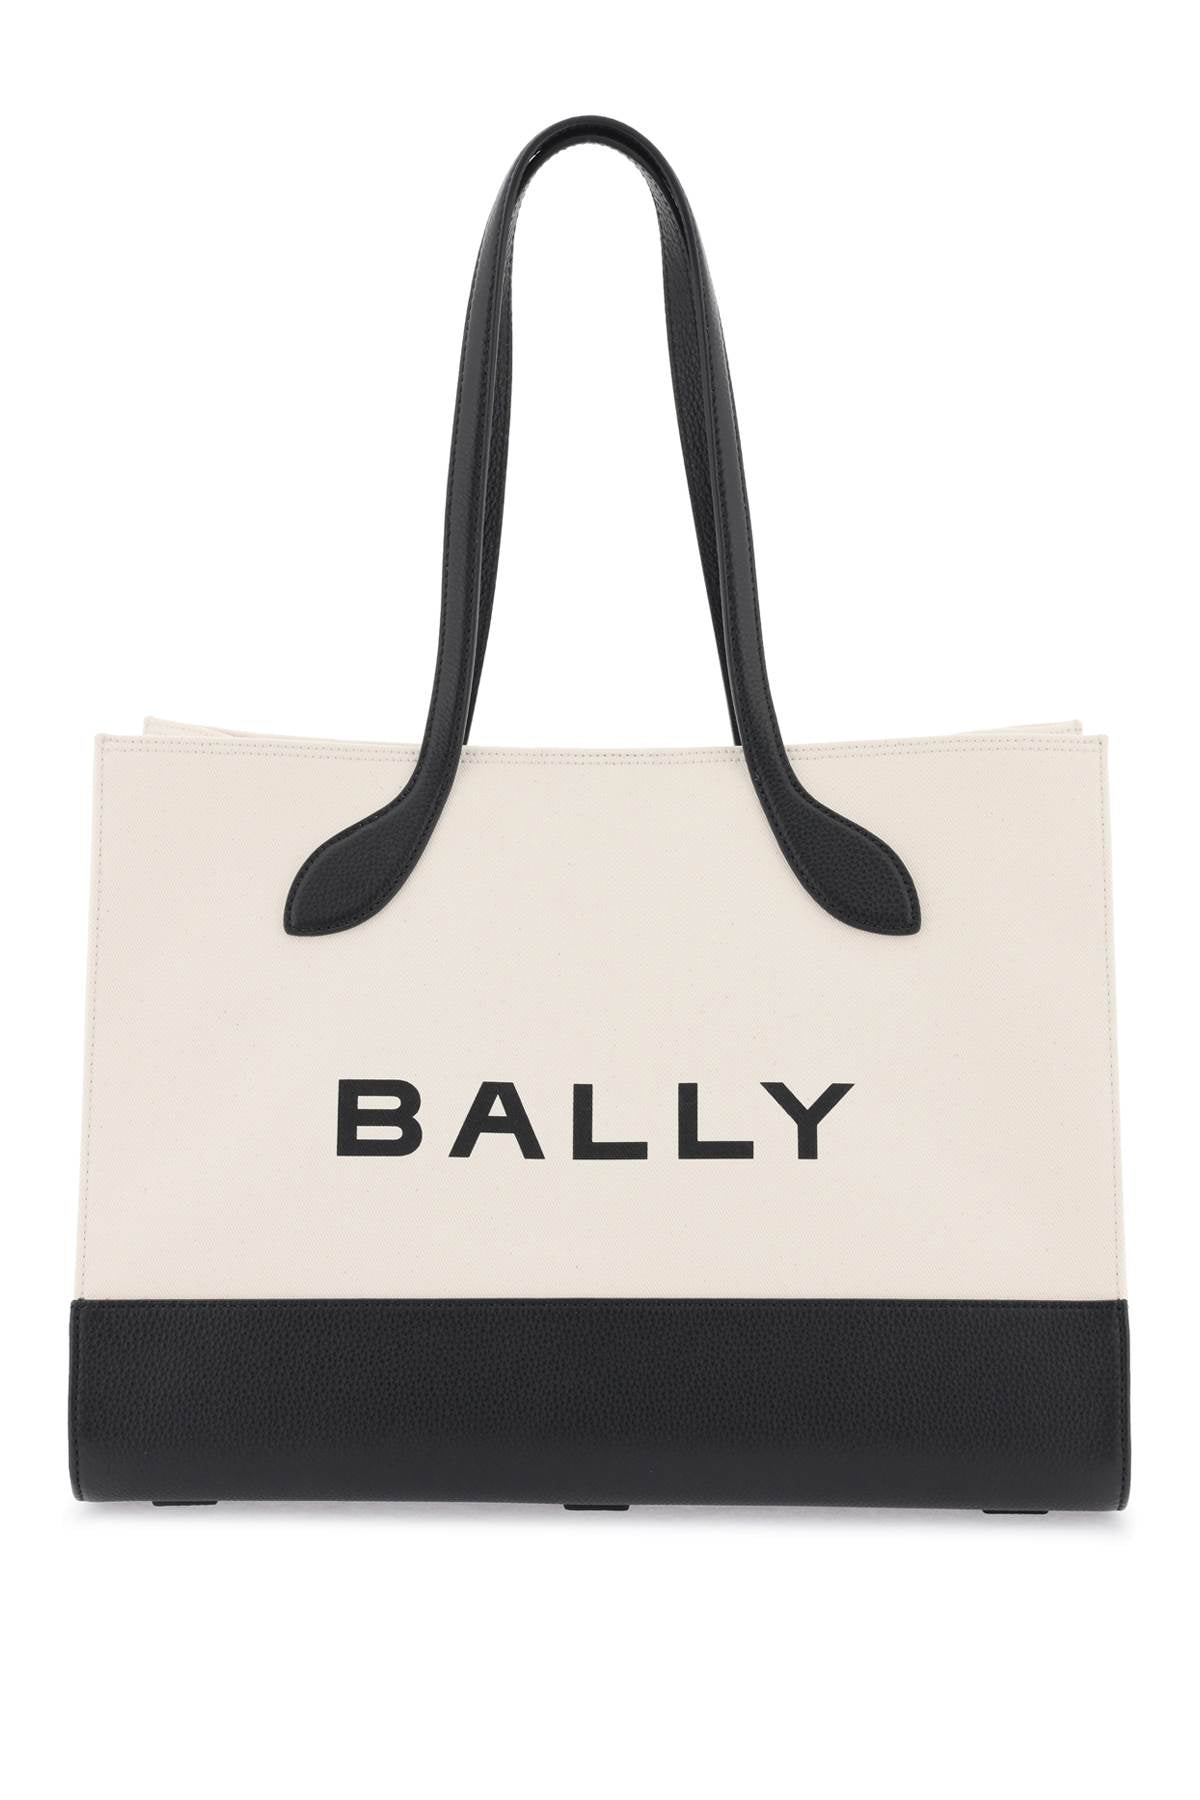 Bally 'Keep On' Tote Bag-Bally-Urbanheer